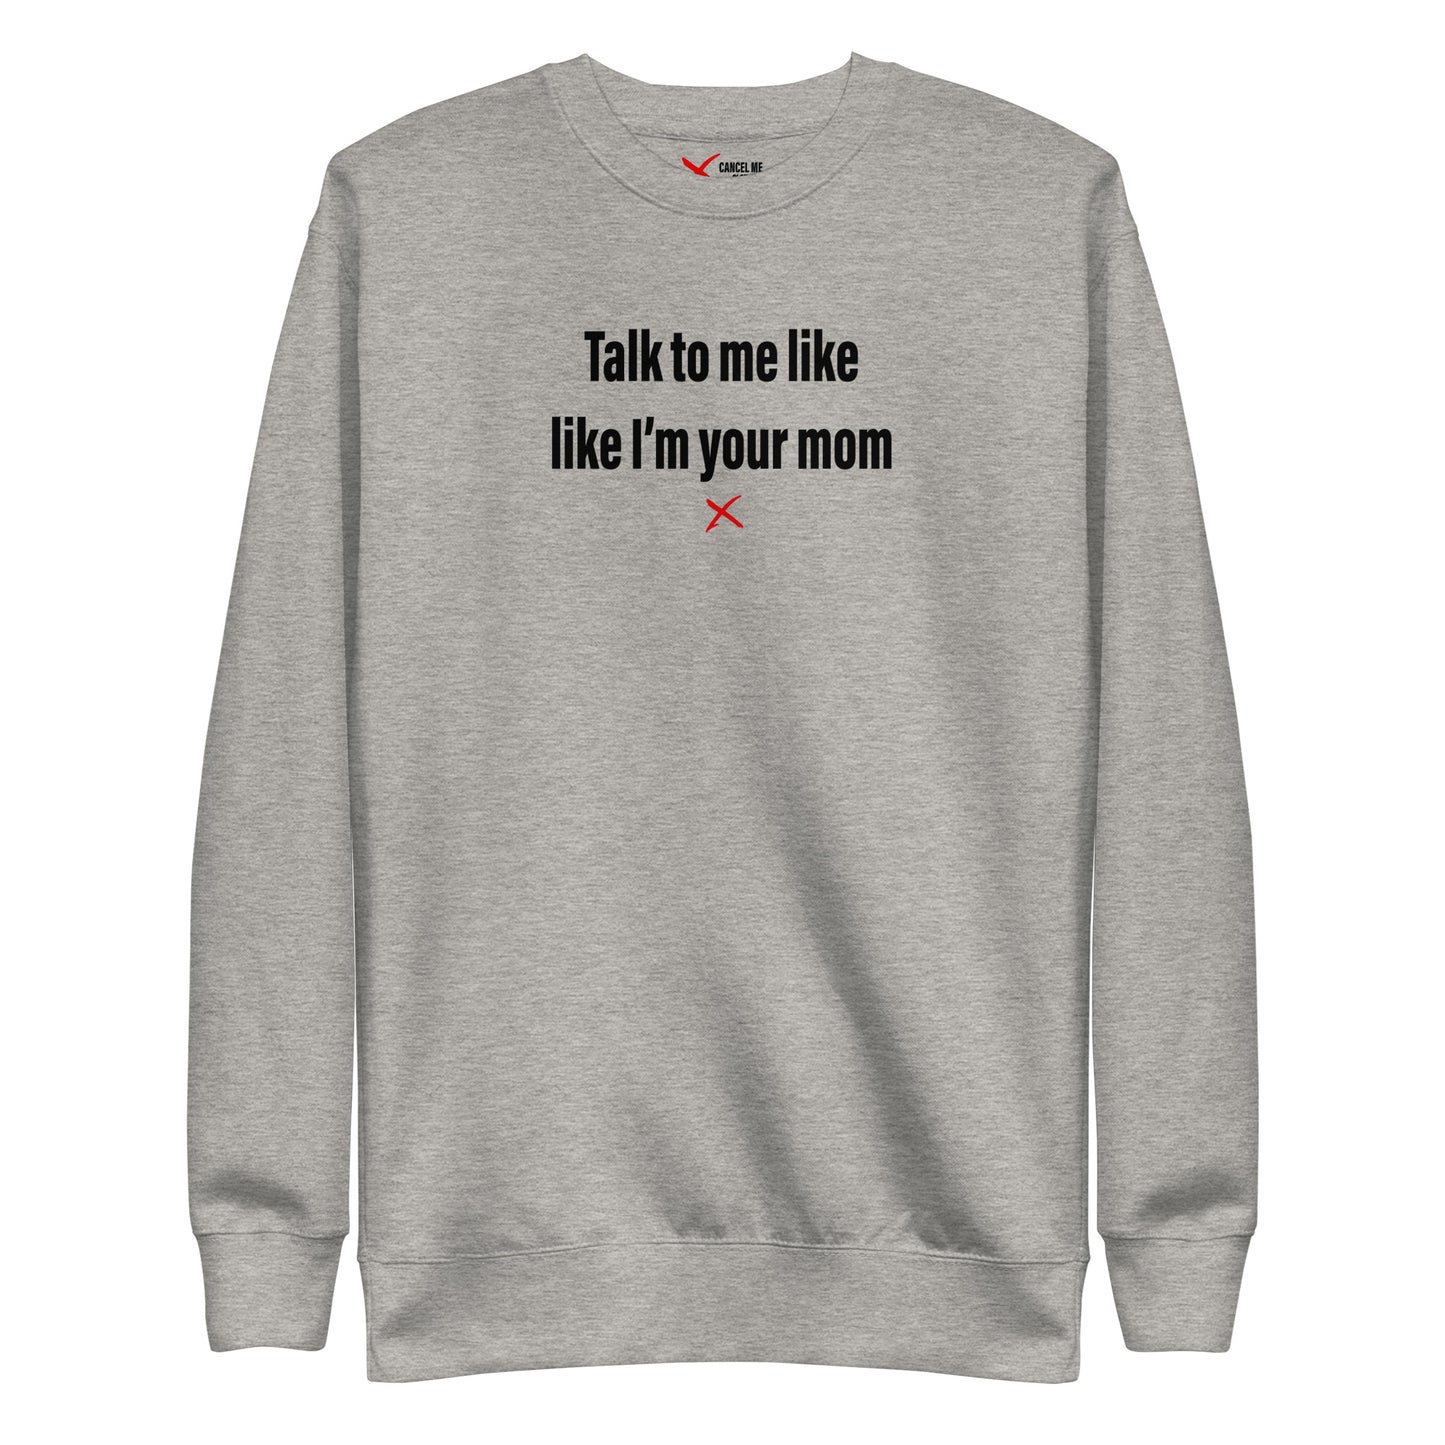 Talk to me like like I'm your mom - Sweatshirt